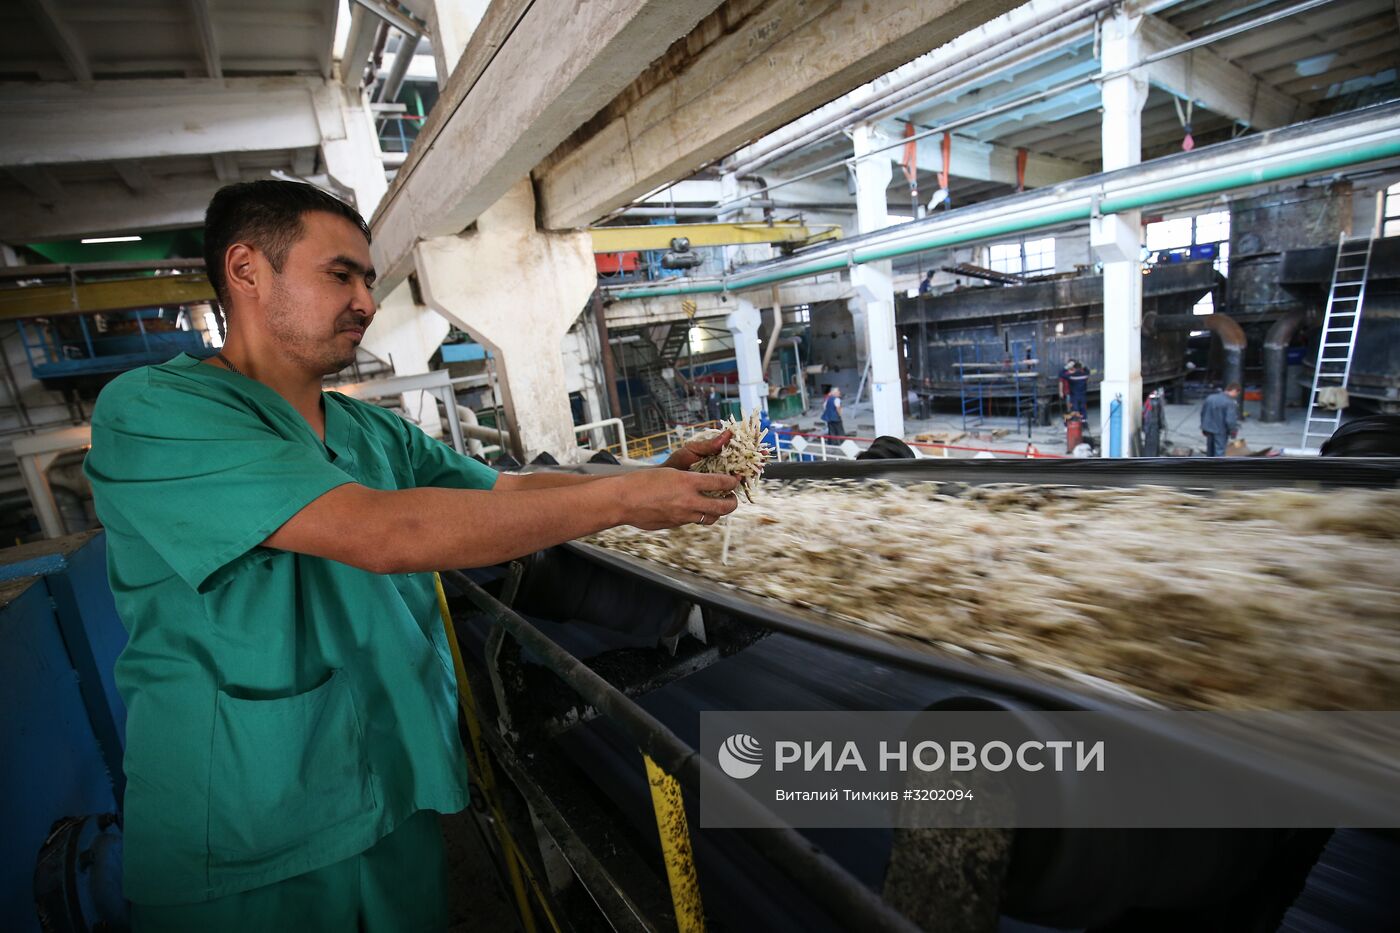 Сахарный завод "Свобода" в Краснодарском крае